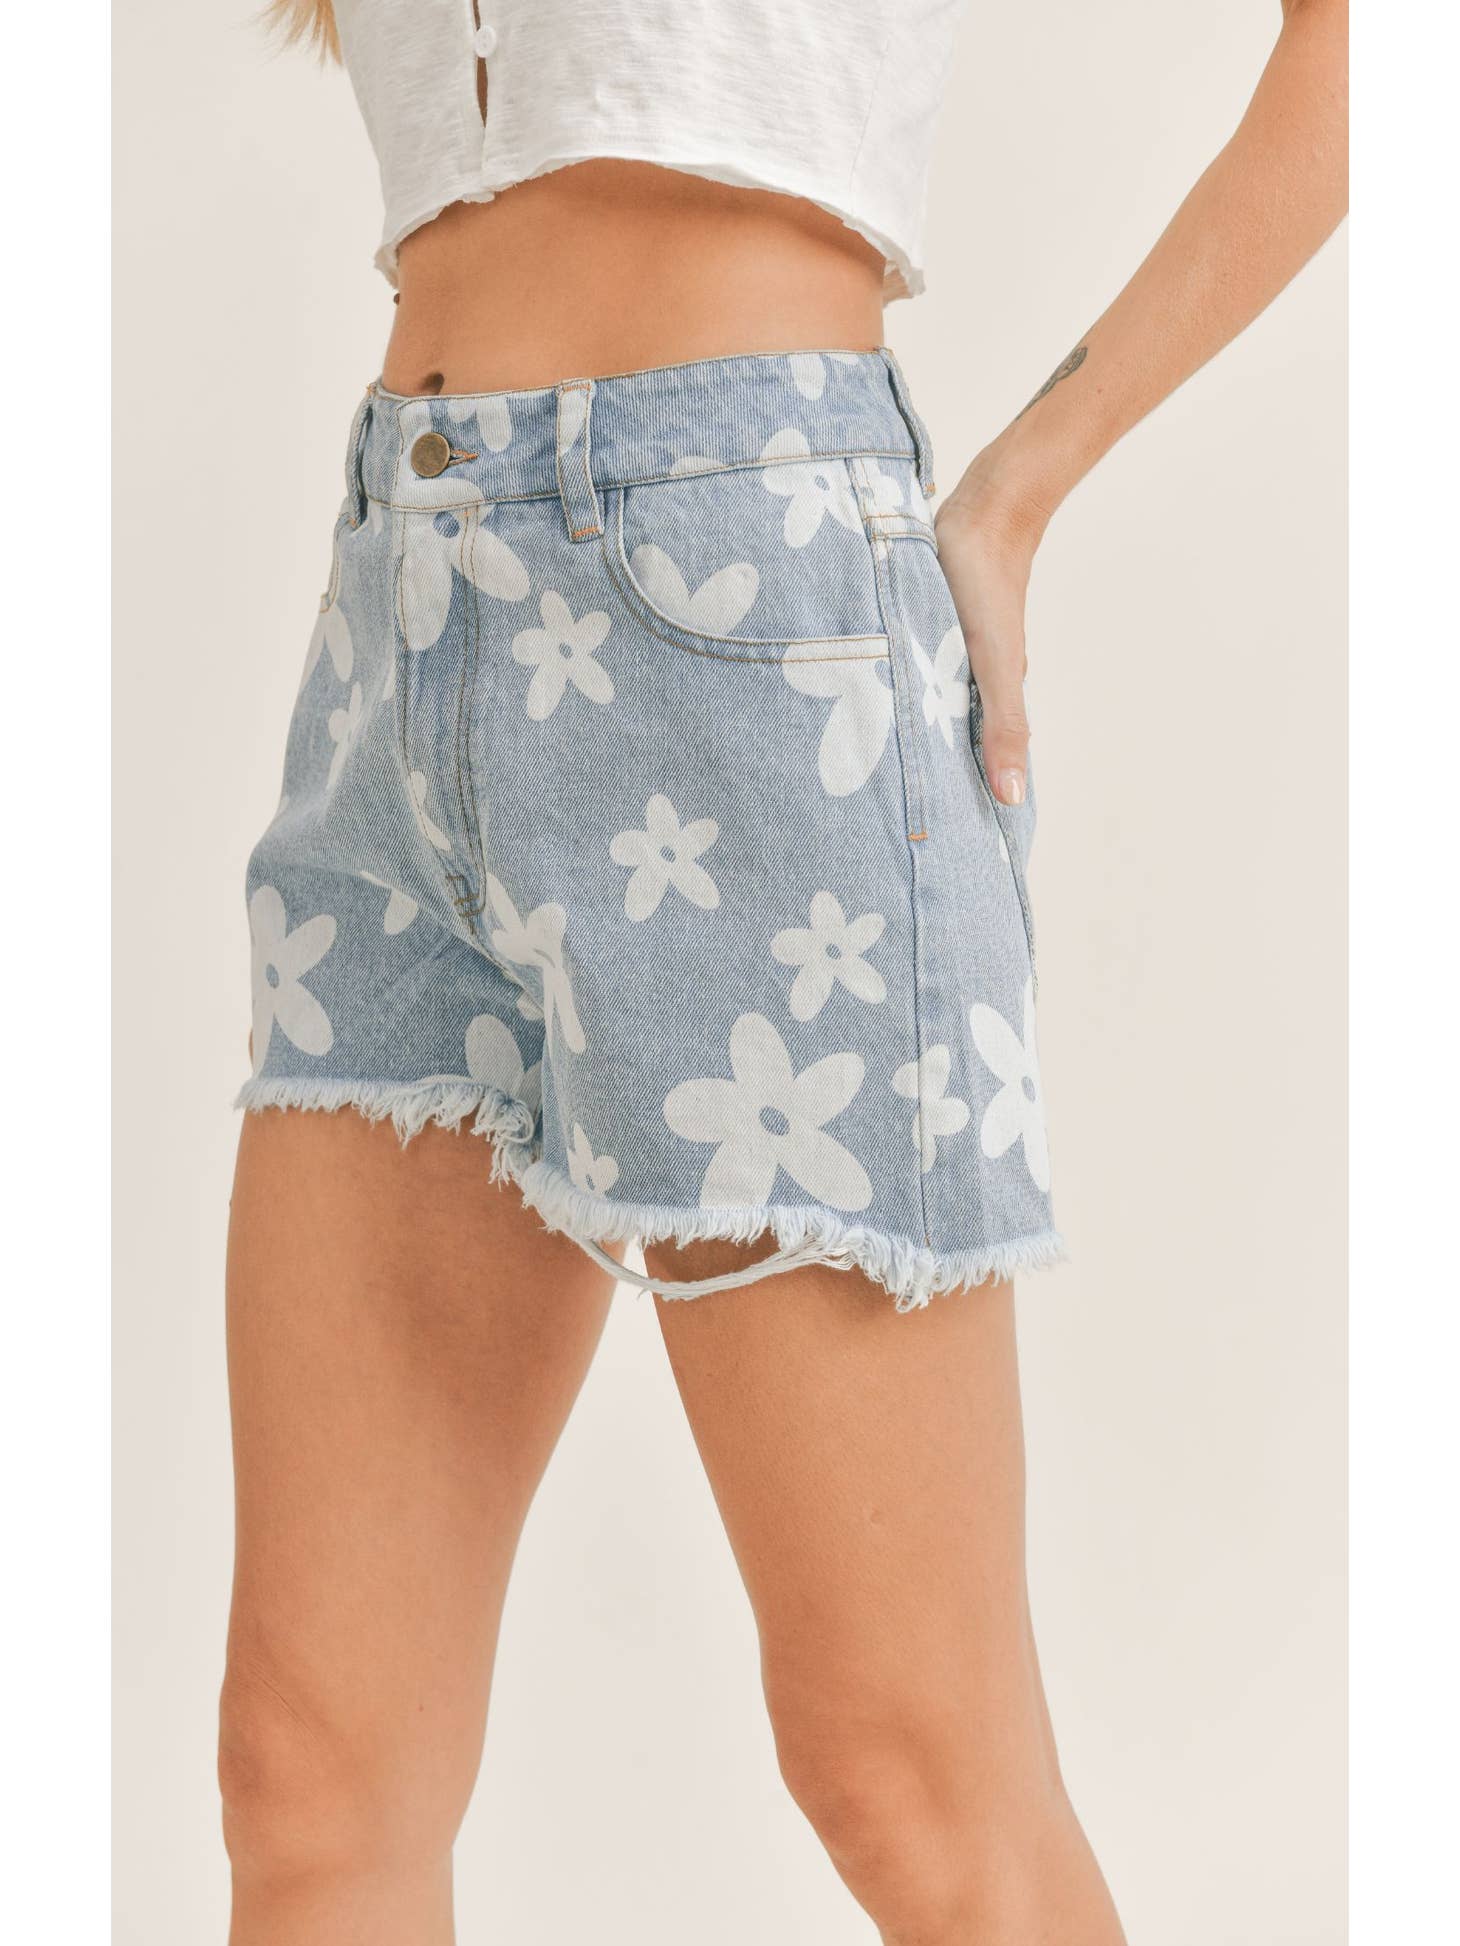 Flower Child Distressed Denim Shorts